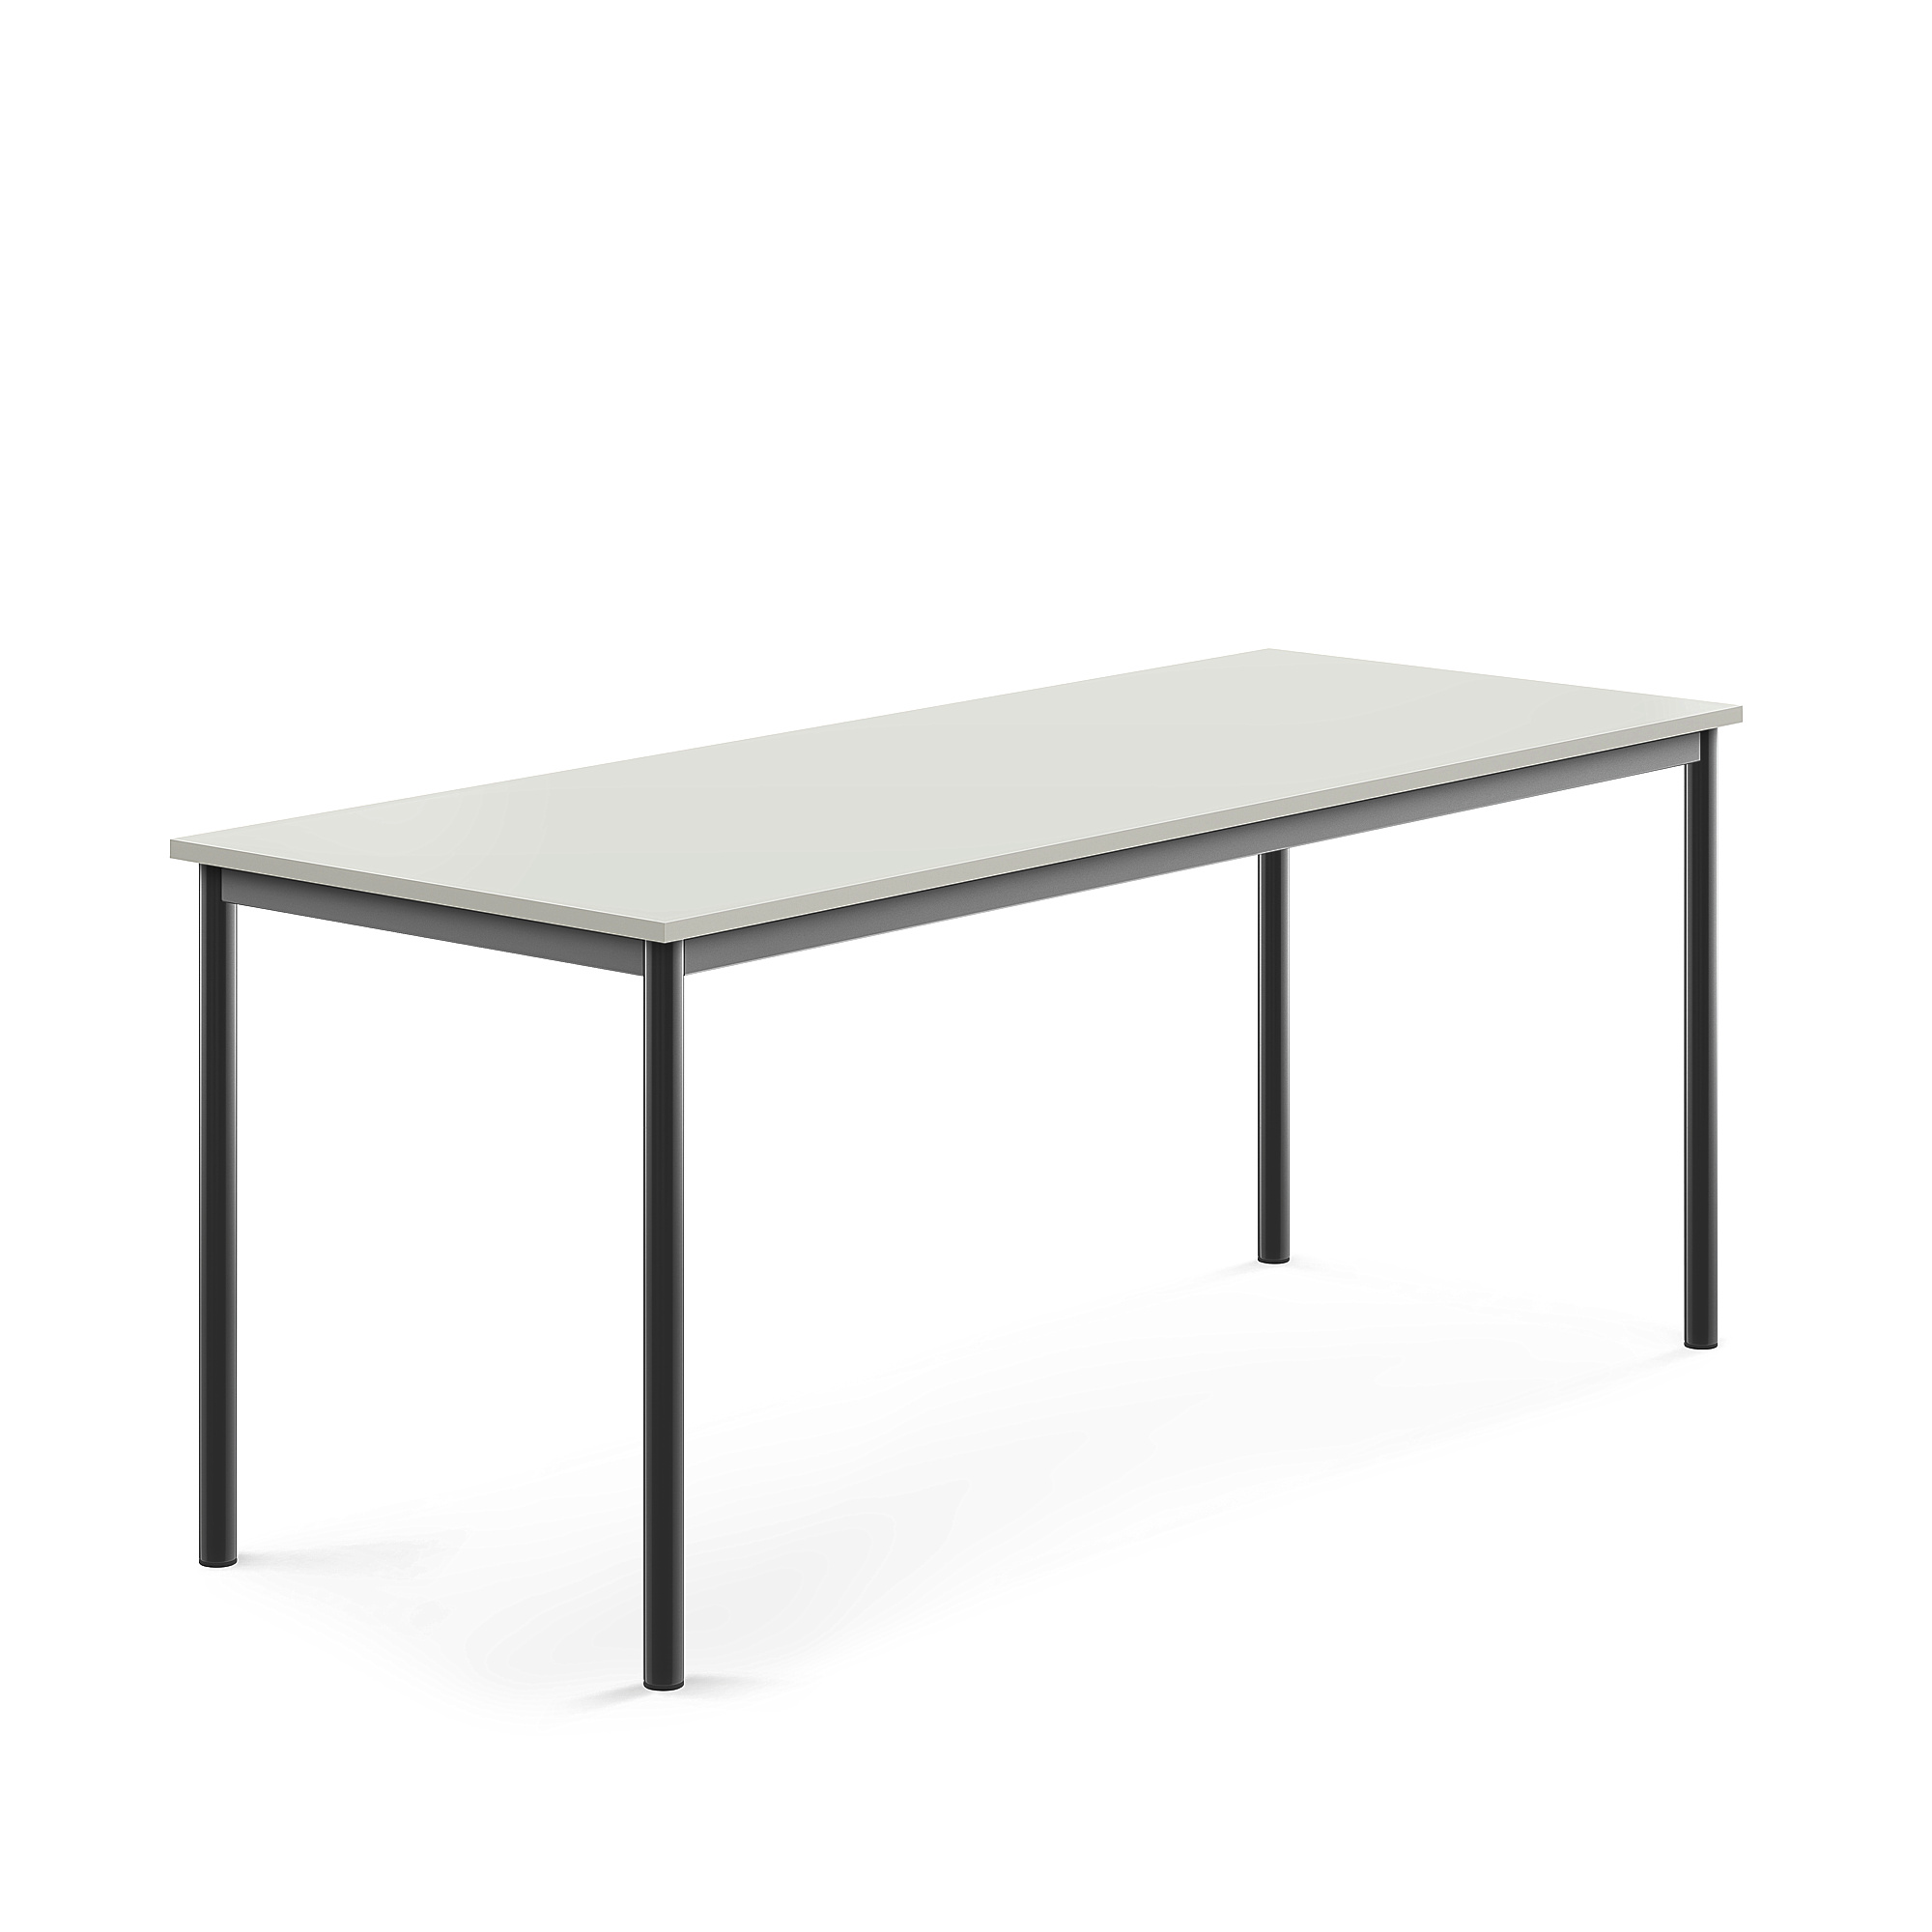 Stůl SONITUS, 1800x700x720 mm, antracitově šedé nohy, HPL deska tlumící hluk, šedá